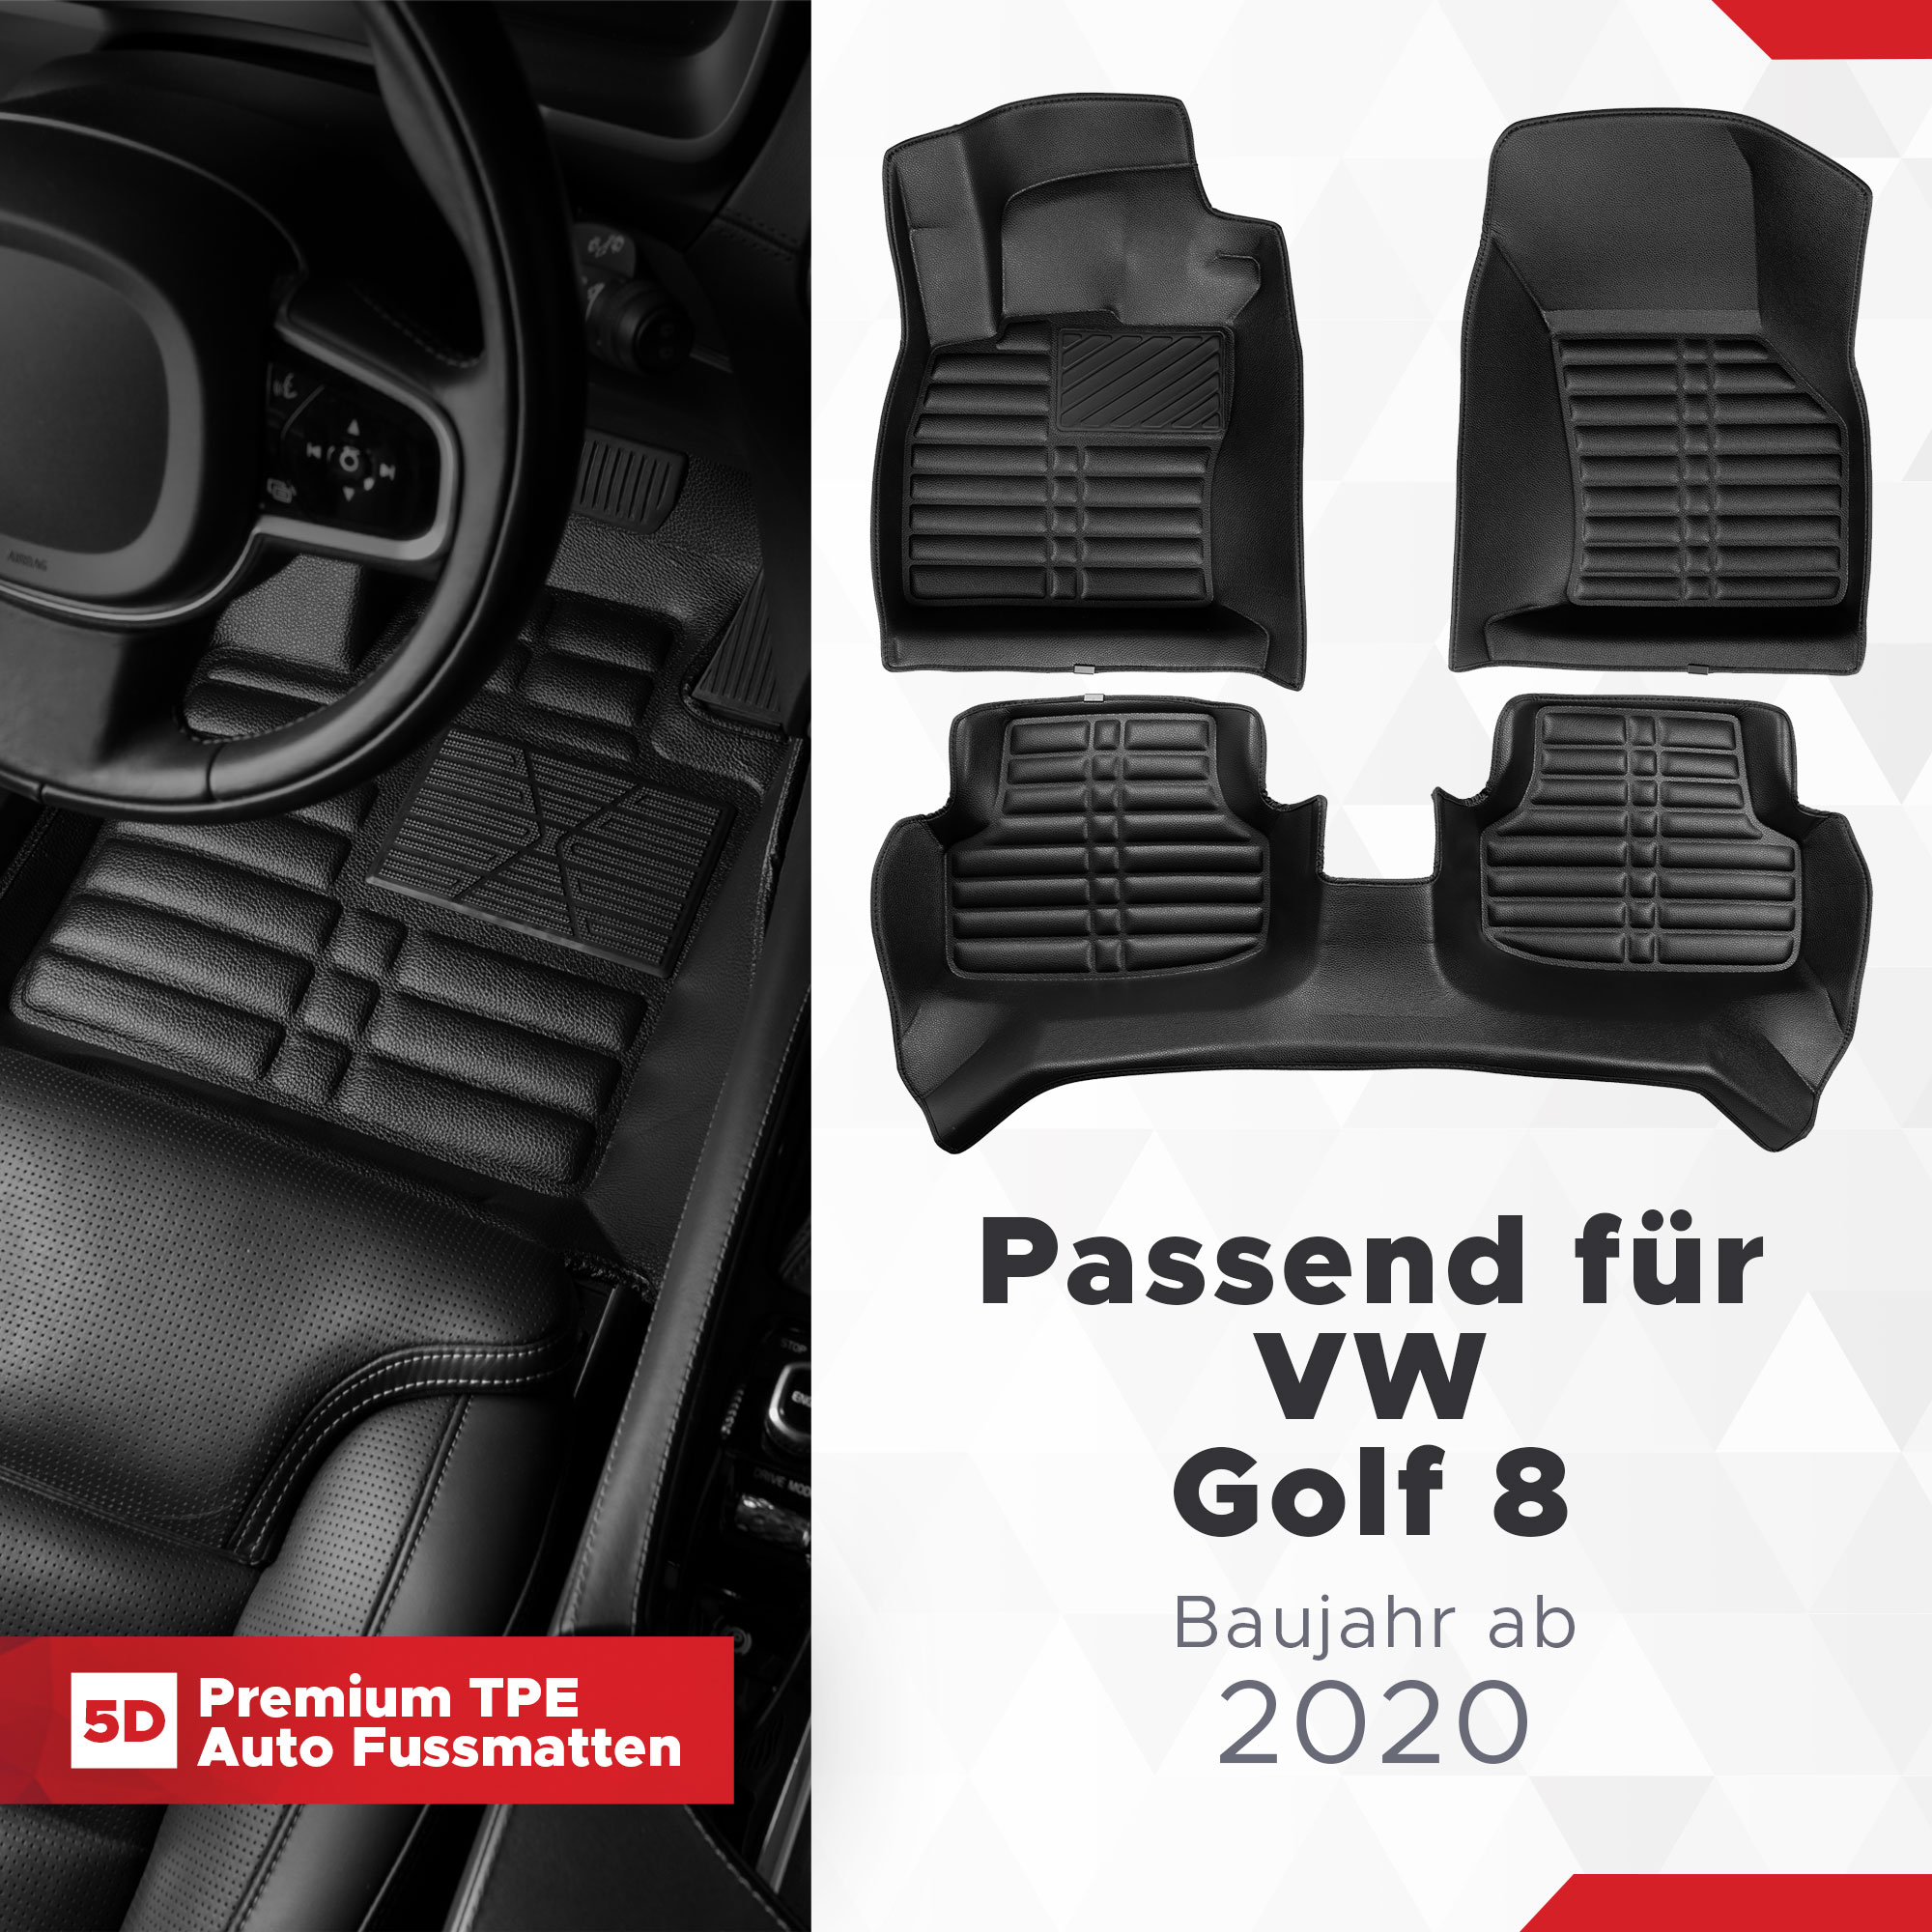 3D Fußmatten passend für VW Golf 8 ab 2020 - innovativ